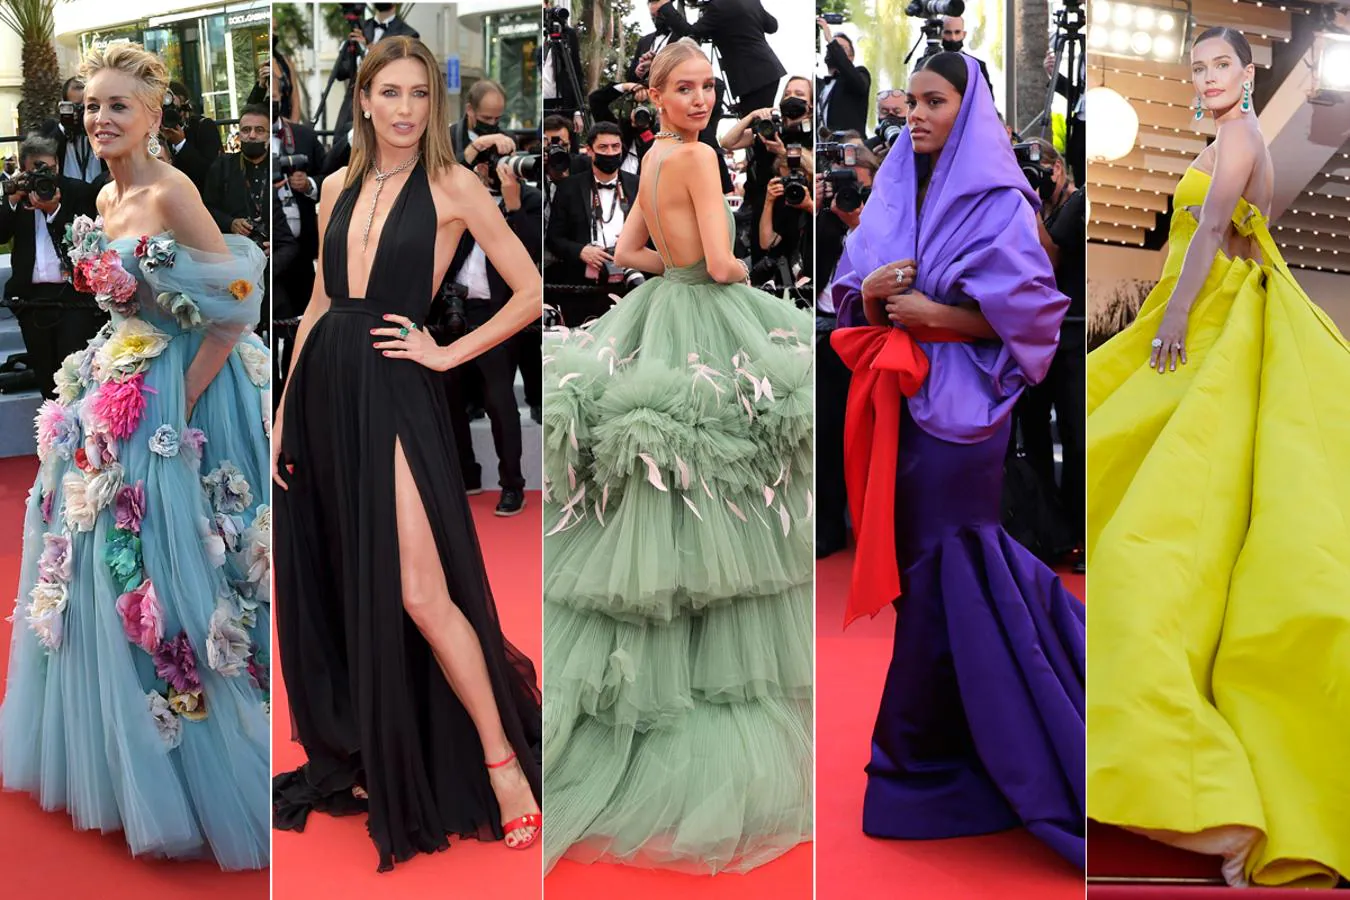 Derroche de elegancia, originalidad y atrevimiento sobre la alfombra roja de la 74 edición del Festival de cine de Cannes. Un repaso por algunos de los estilismos más insólitos y espectaculares que desfilan estos días por La Croissete.